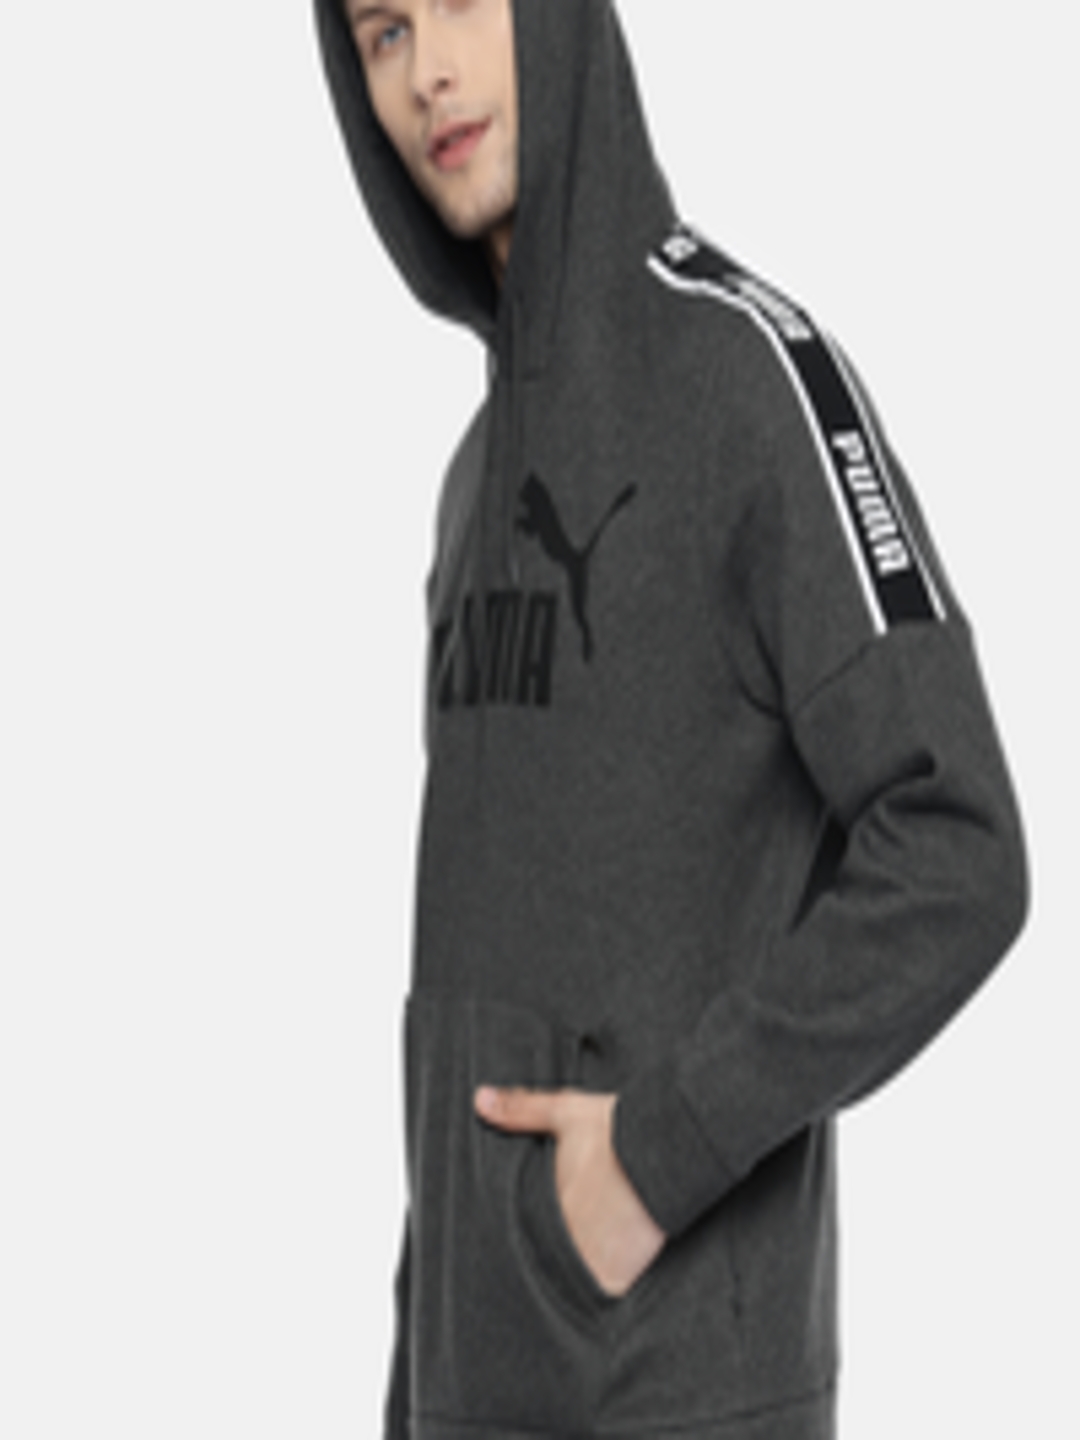 Buy Puma Men Charcoal Grey Printed Hooded Amplified Hoody FL Sweatshirt ...